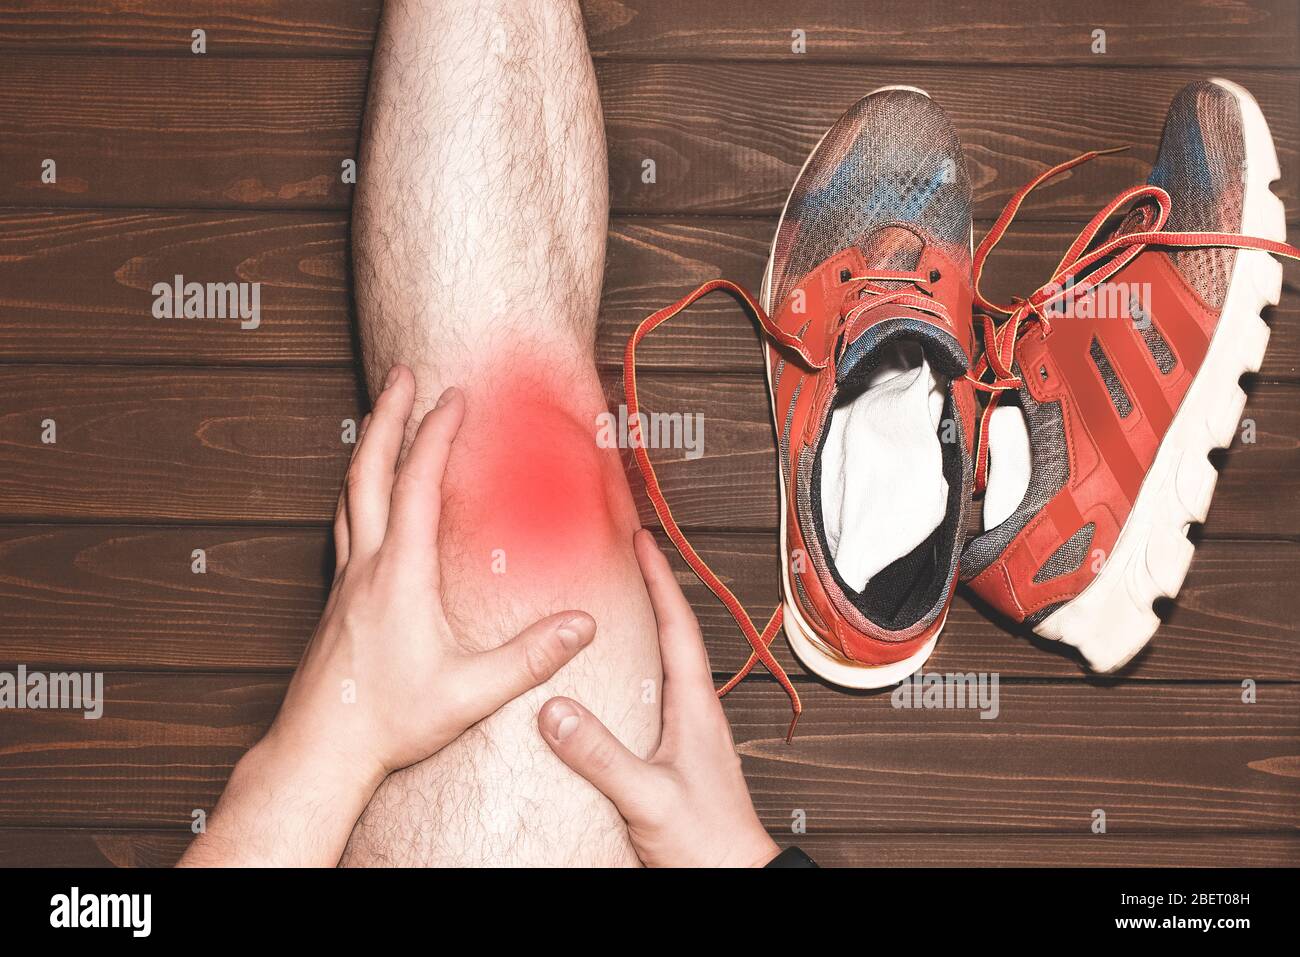 Junger Sportmann mit starken athletischen Beinen, der das Knie mit seinen Händen in Schmerzen hält, nachdem er während eines Lauftrainings auf woo eine Bandverletzung erlitten hat Stockfoto